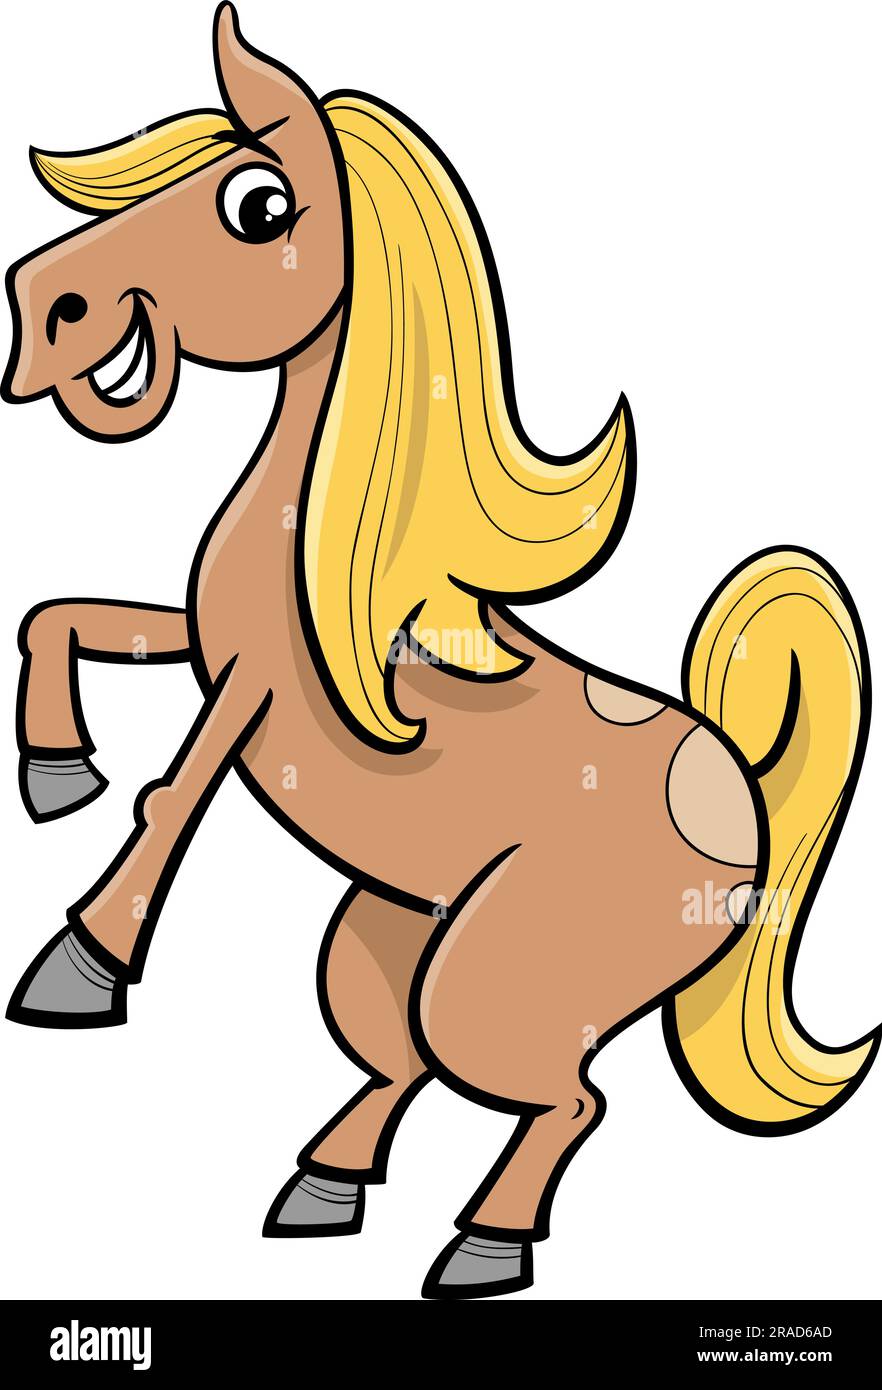 Illustration de dessin animé de caractère animal de ferme de cheval ou poney drôle Illustration de Vecteur